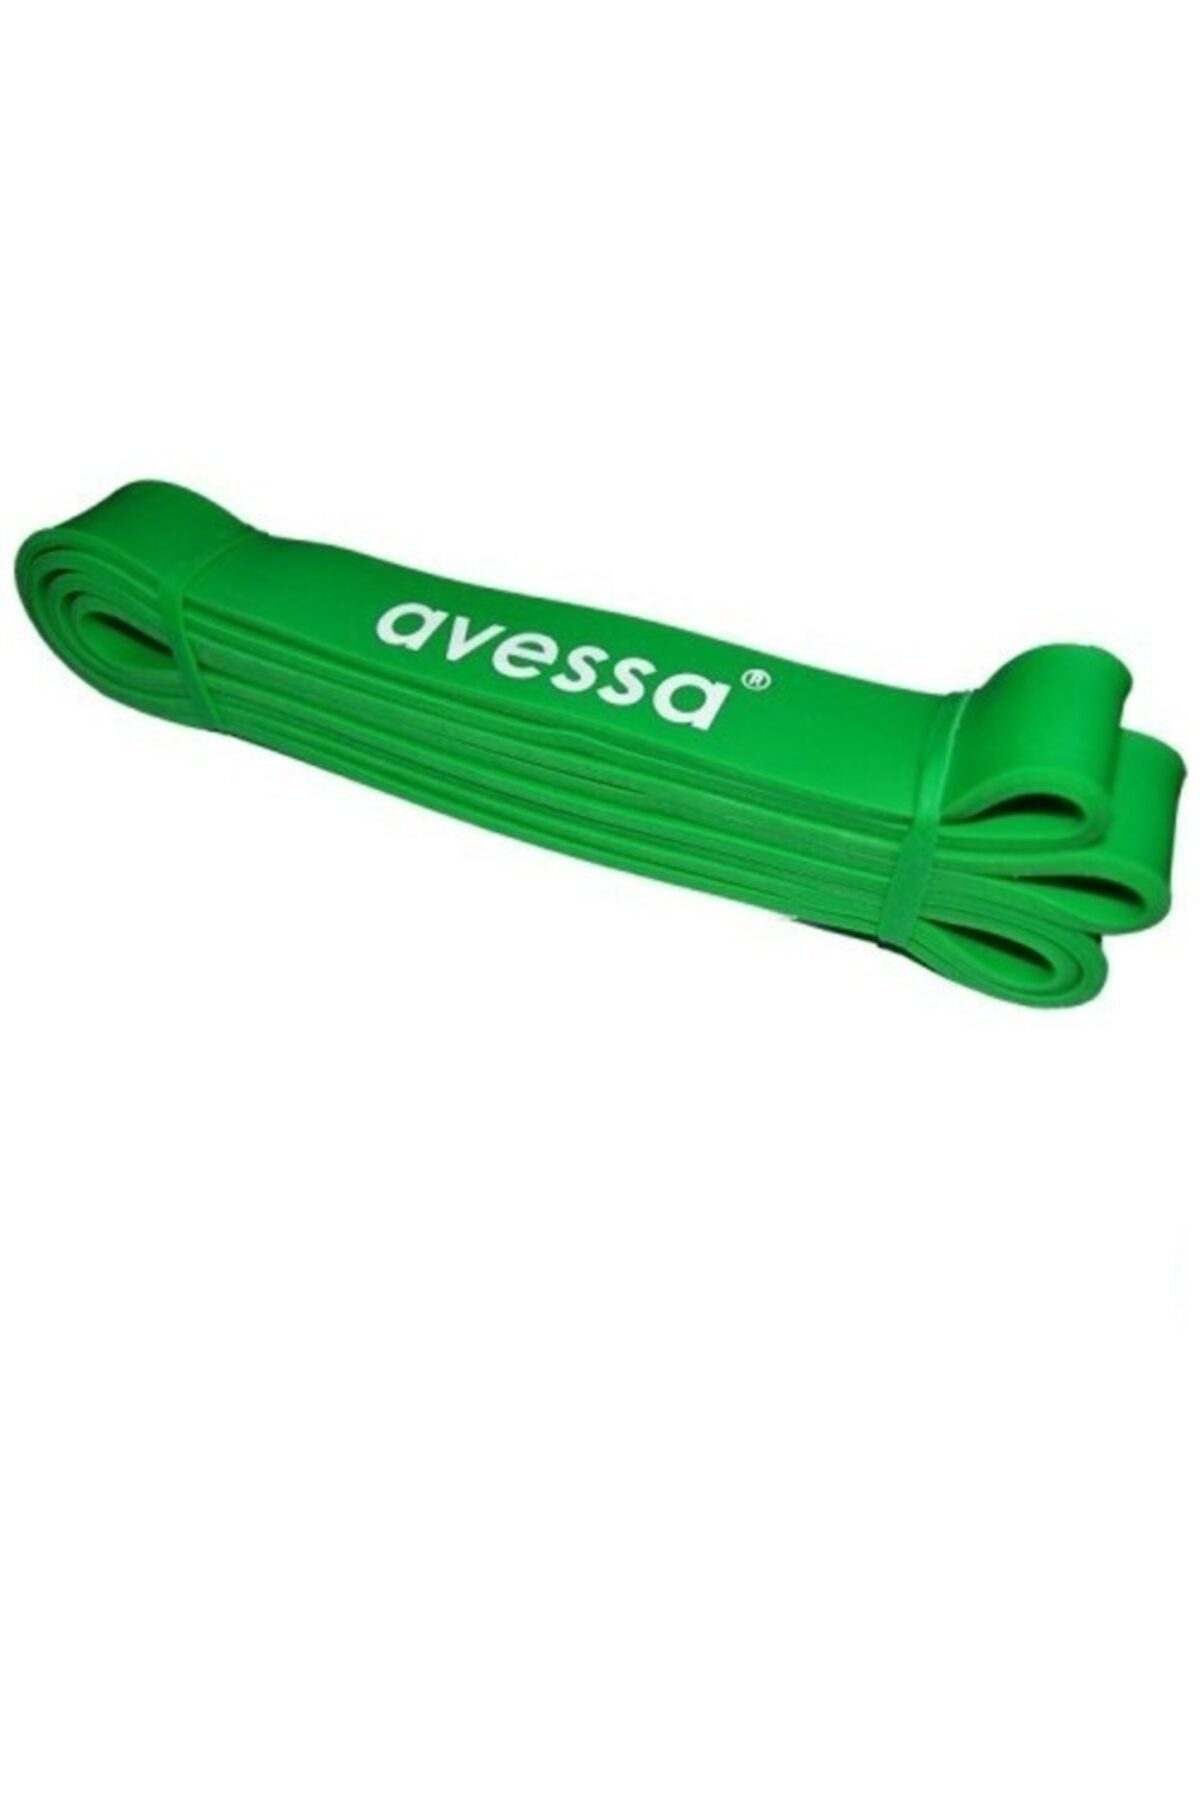 Avessa Yeşil Lpb Güç Bandı Direnç Egzersiz Lastiği 32 mm